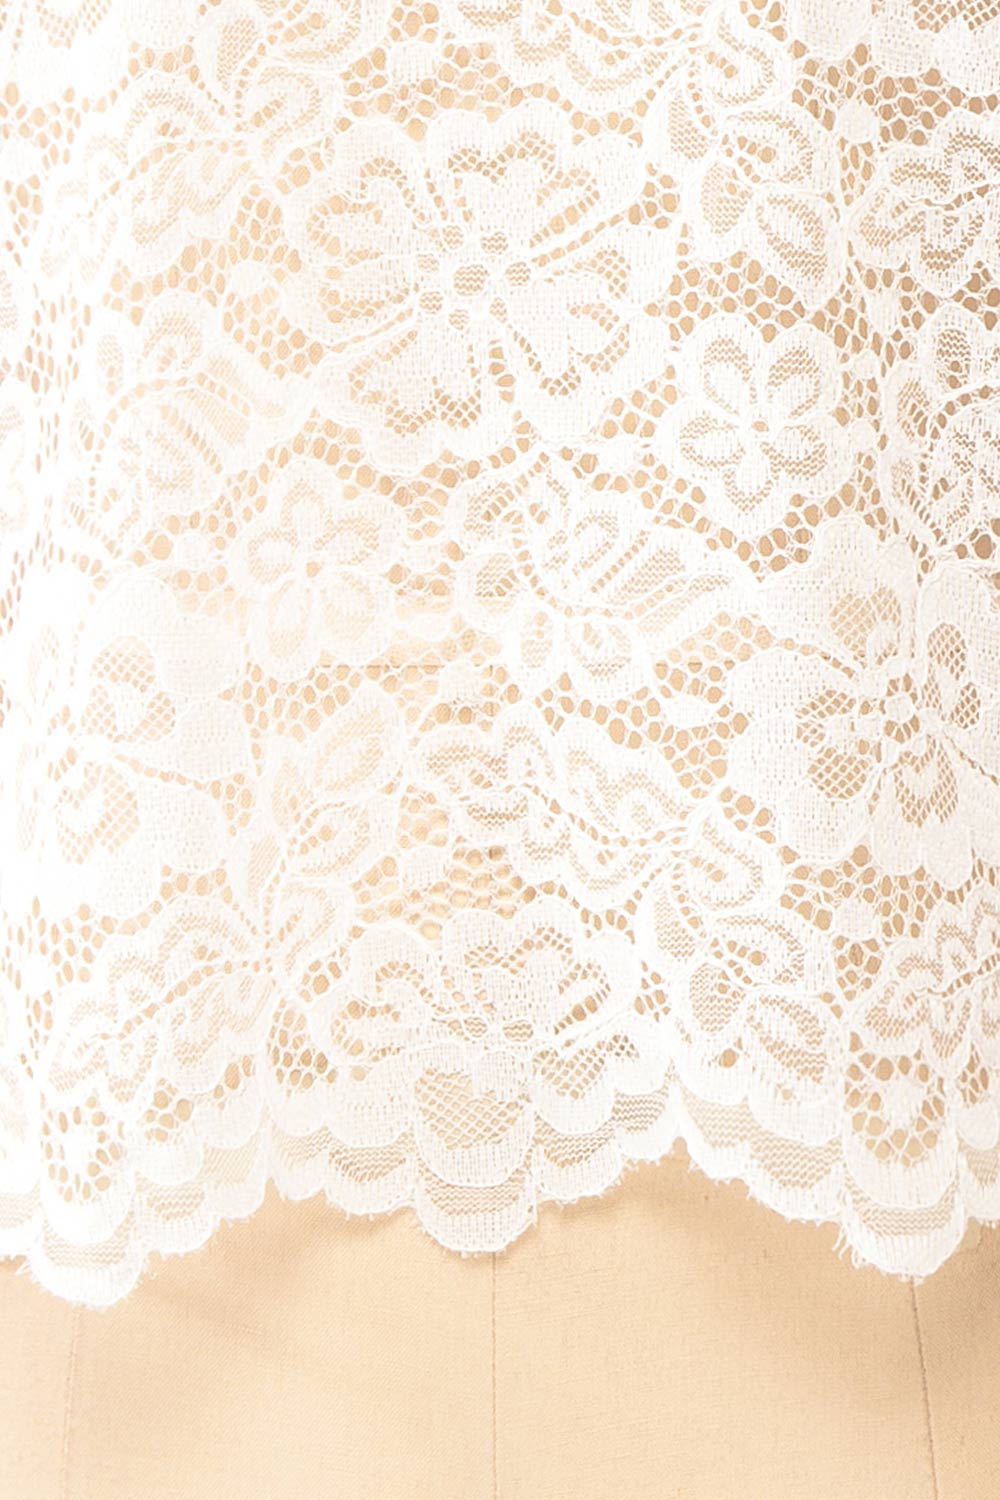 Dahana Ivory Floral Lace Blouse | Boutique 1861 fabric
